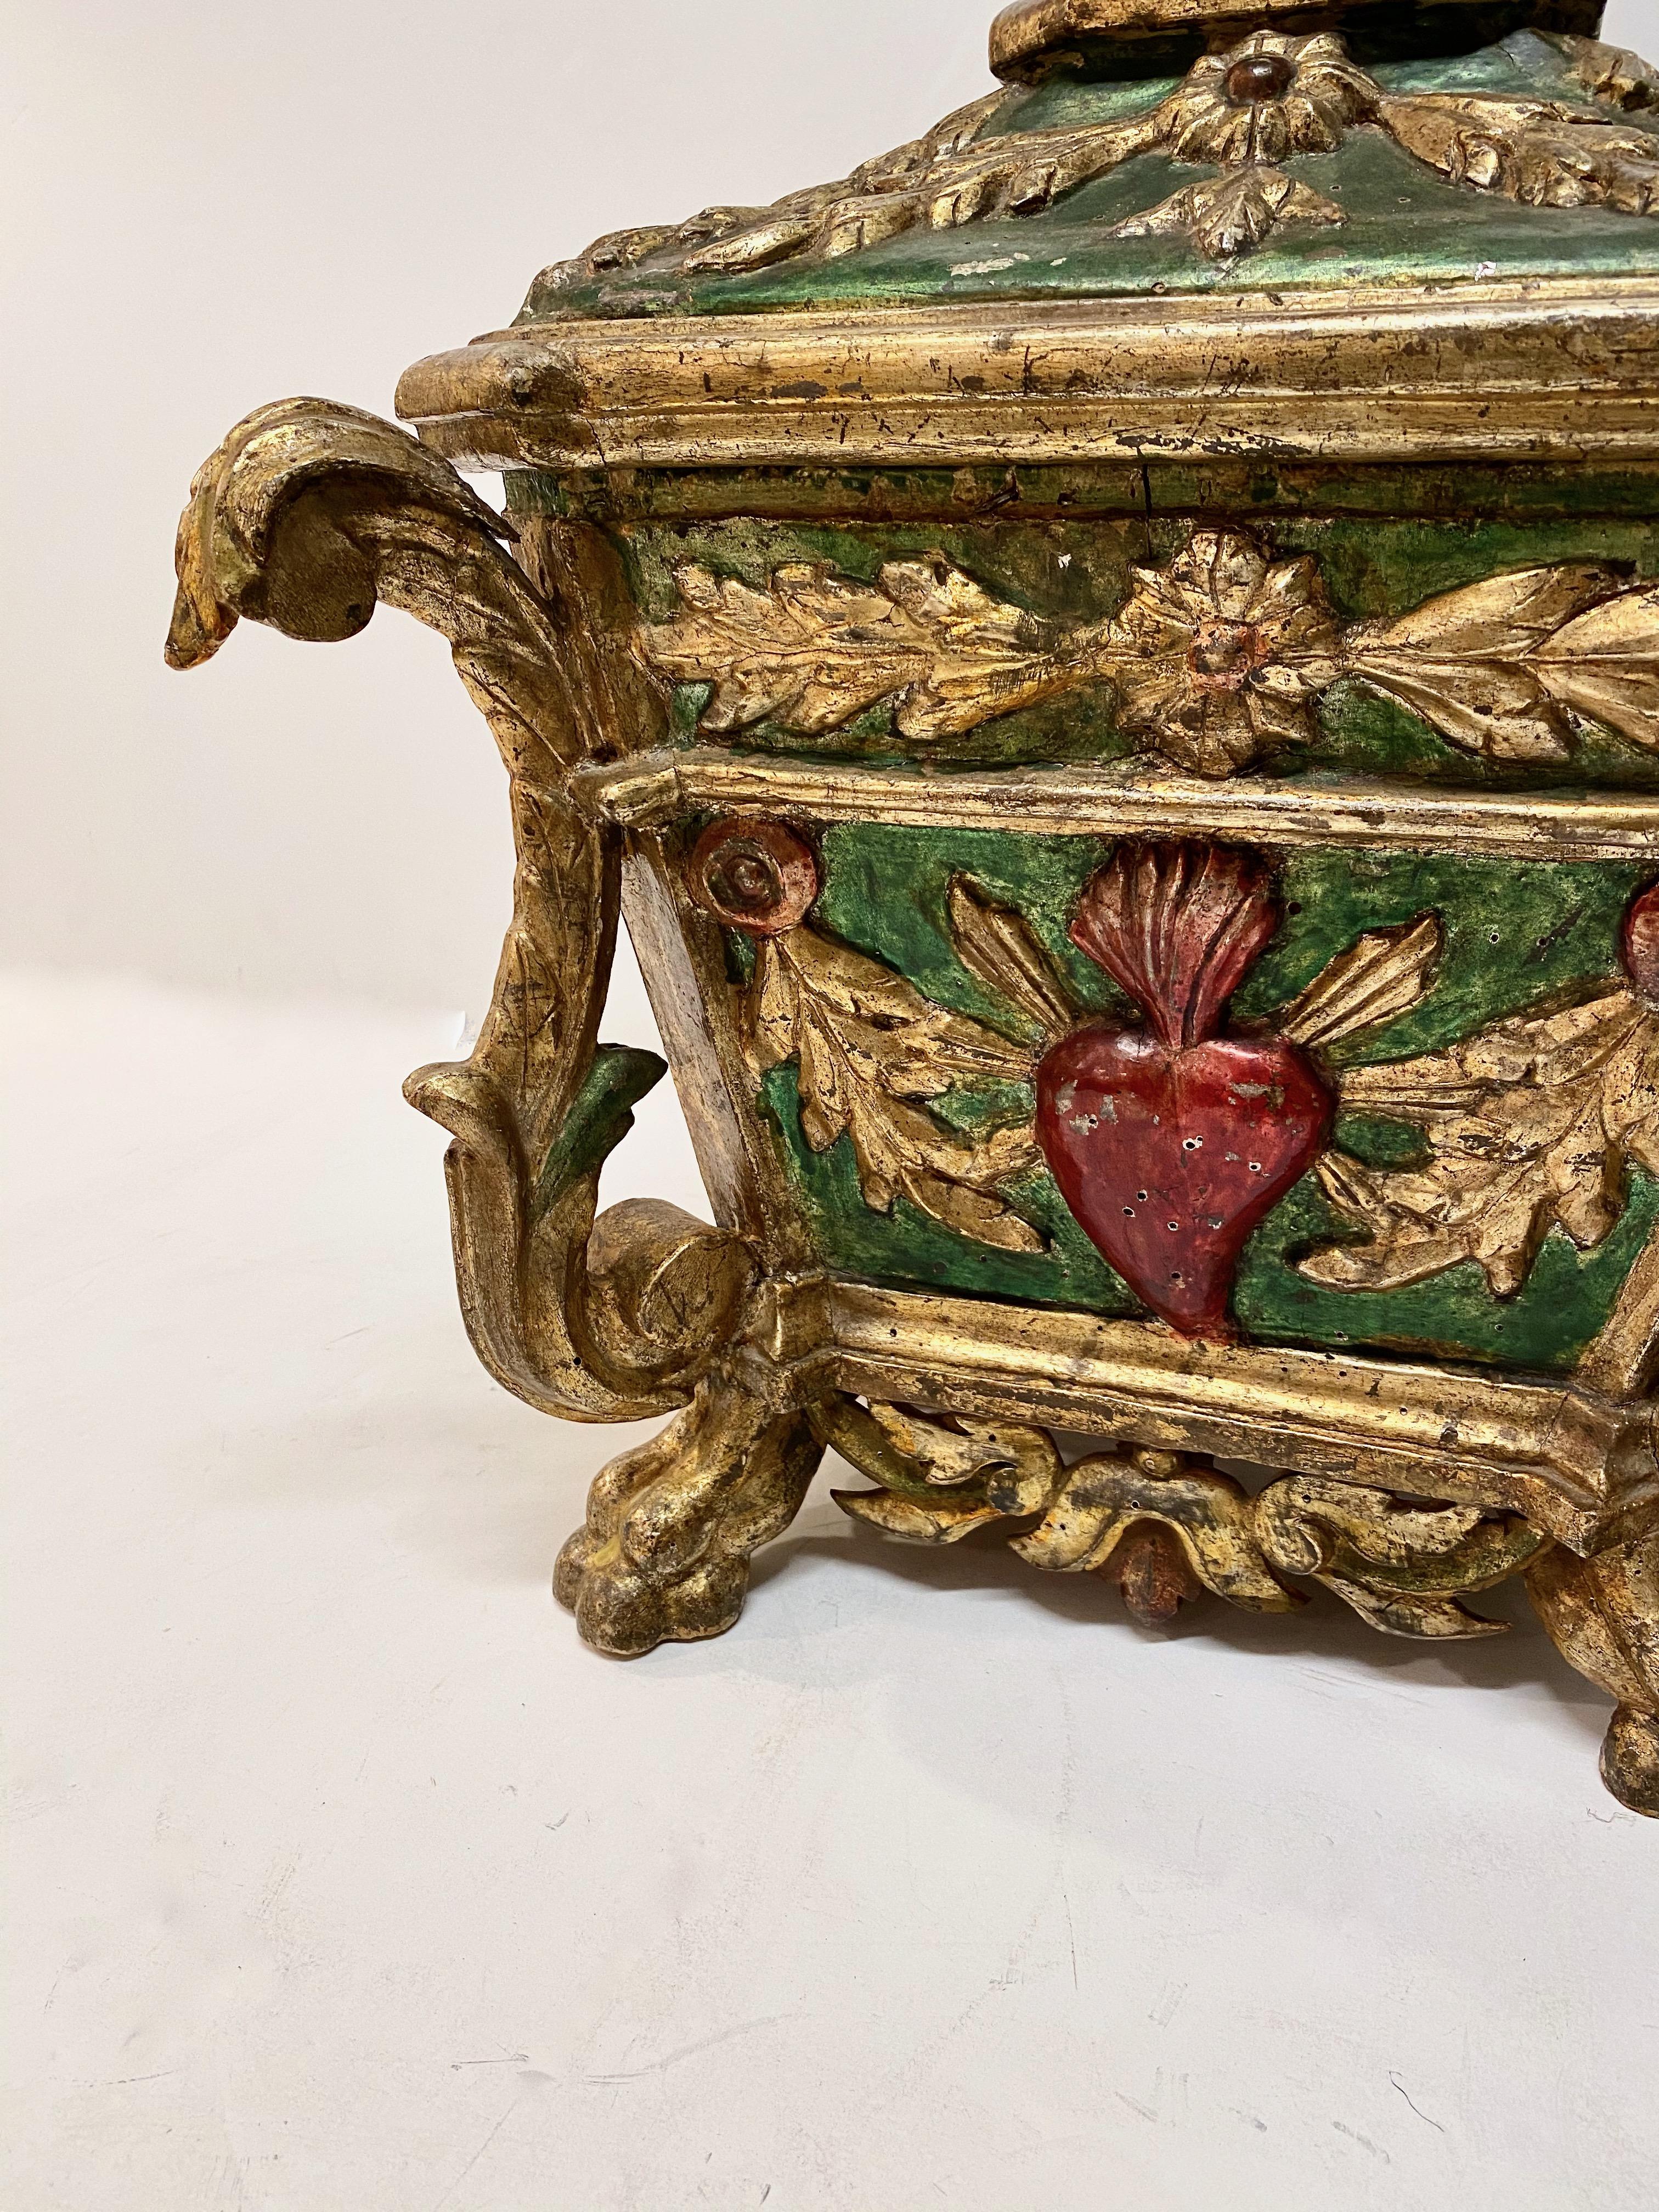 Il s'agit d'un exemple exceptionnel de reliquaire ou de boîte de table de style colonial espagnol de la fin du 18e/début du 19e siècle. Le vert émeraude associé à la décoration en feuilles d'or rend cette magnifique boîte encore plus attrayante. Le